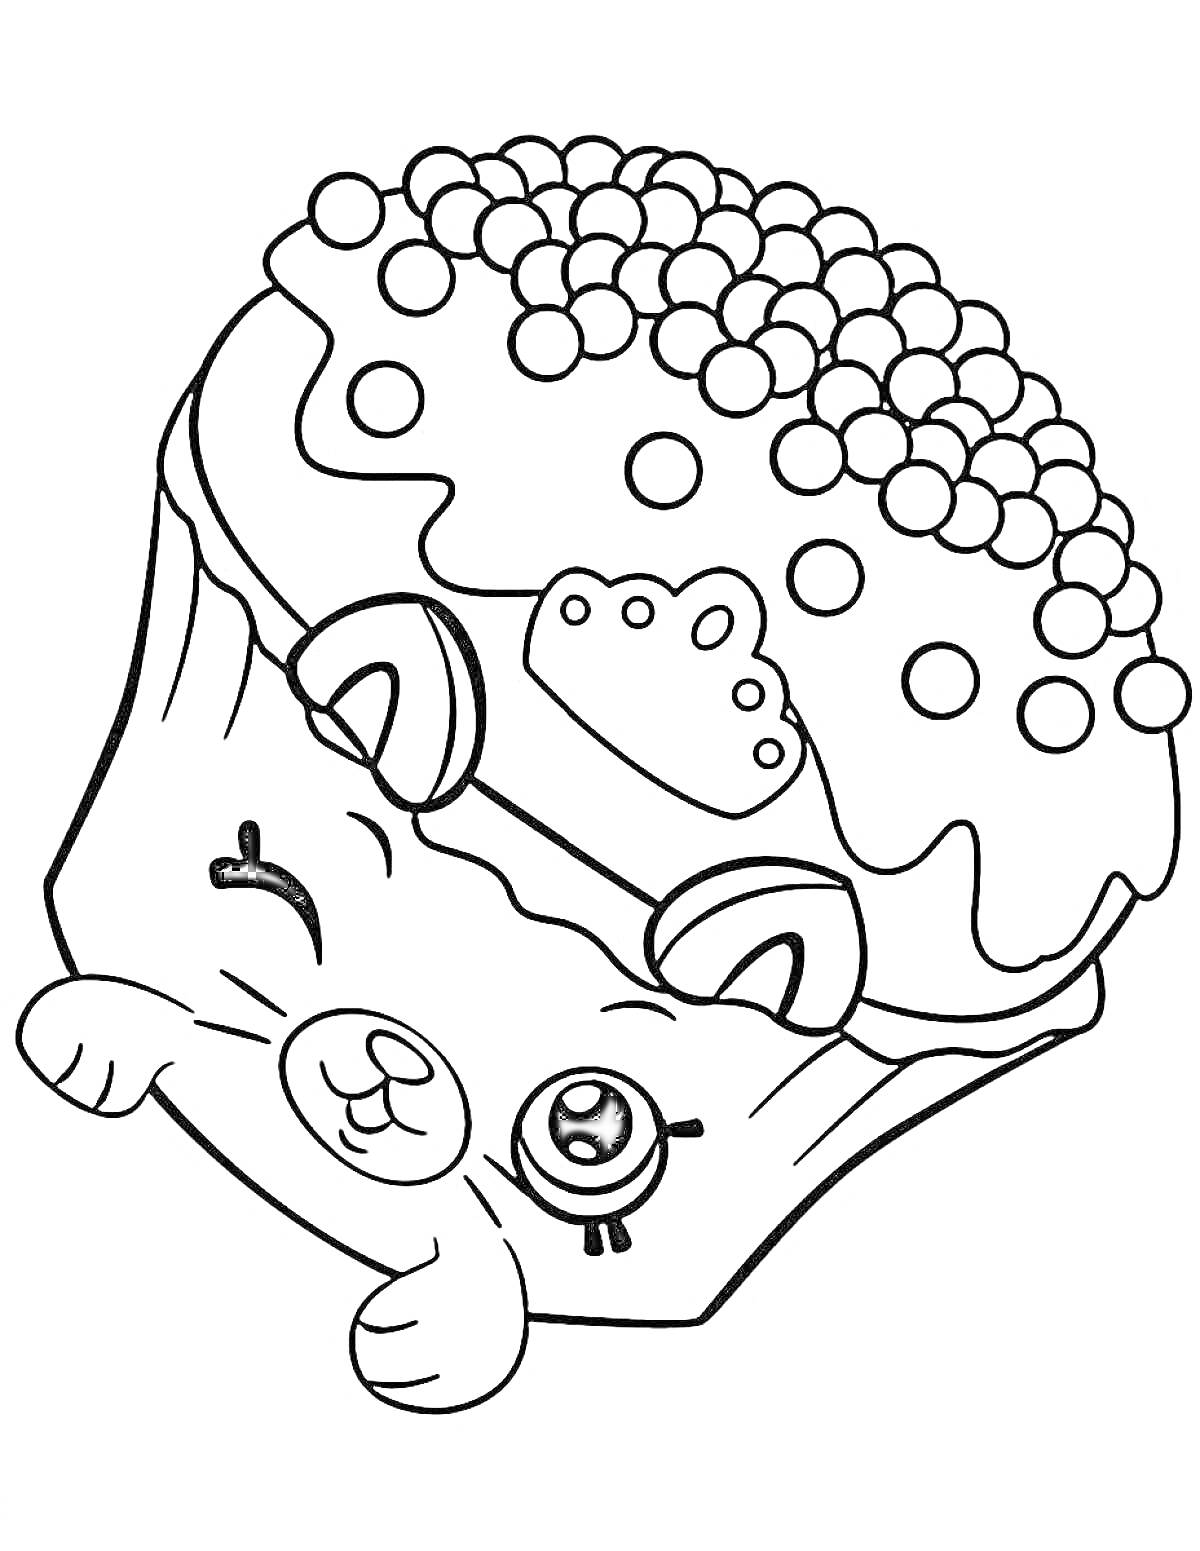 Раскраска Кекс с глазками, ушками и короной на голове, украшенный пупырками